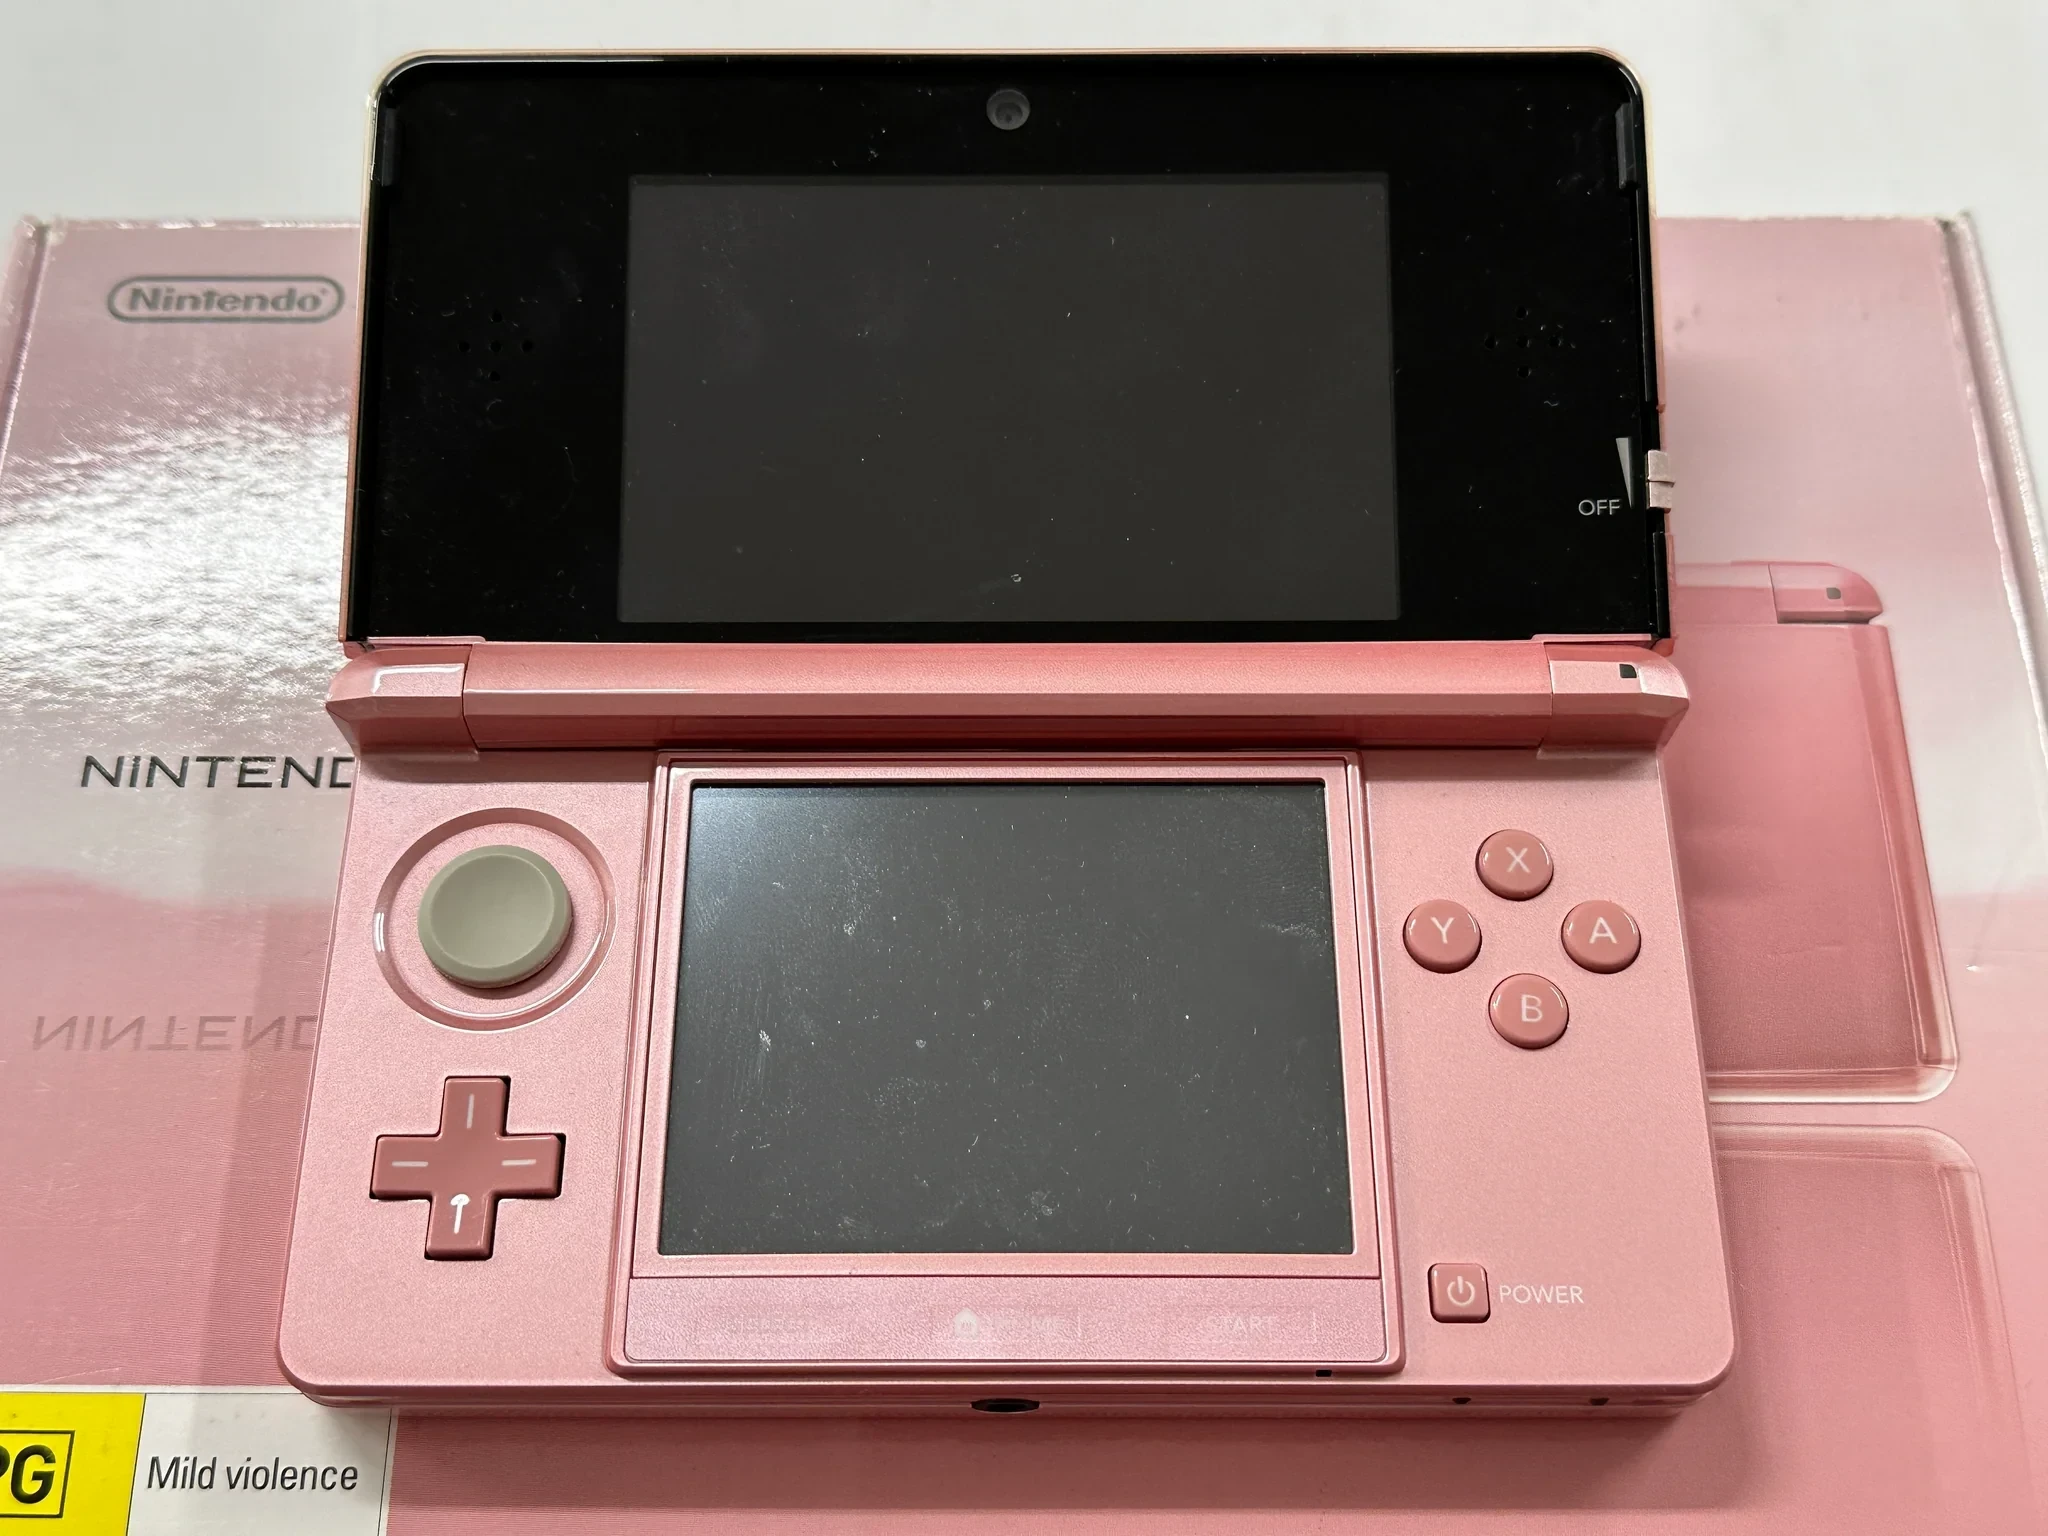  Nintendo 3DS Lavender Pink Console [AUS]